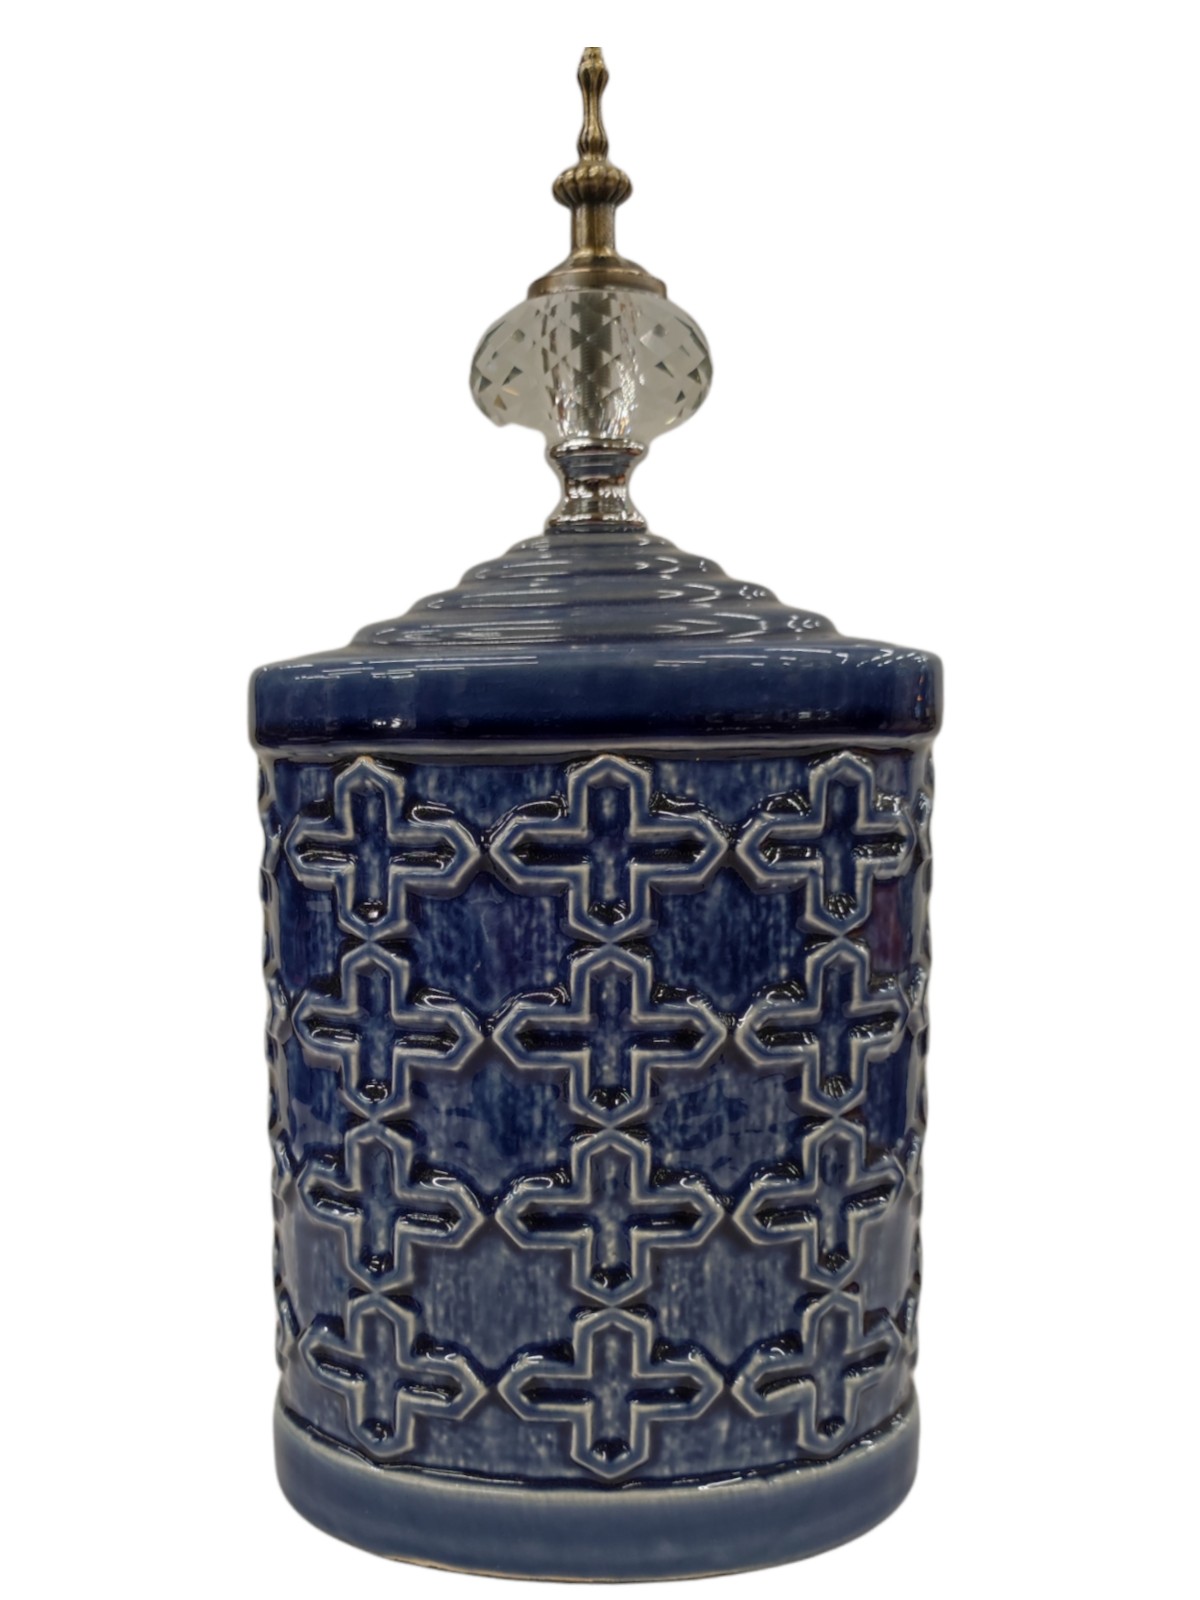 Decorative ceramic vase with lid